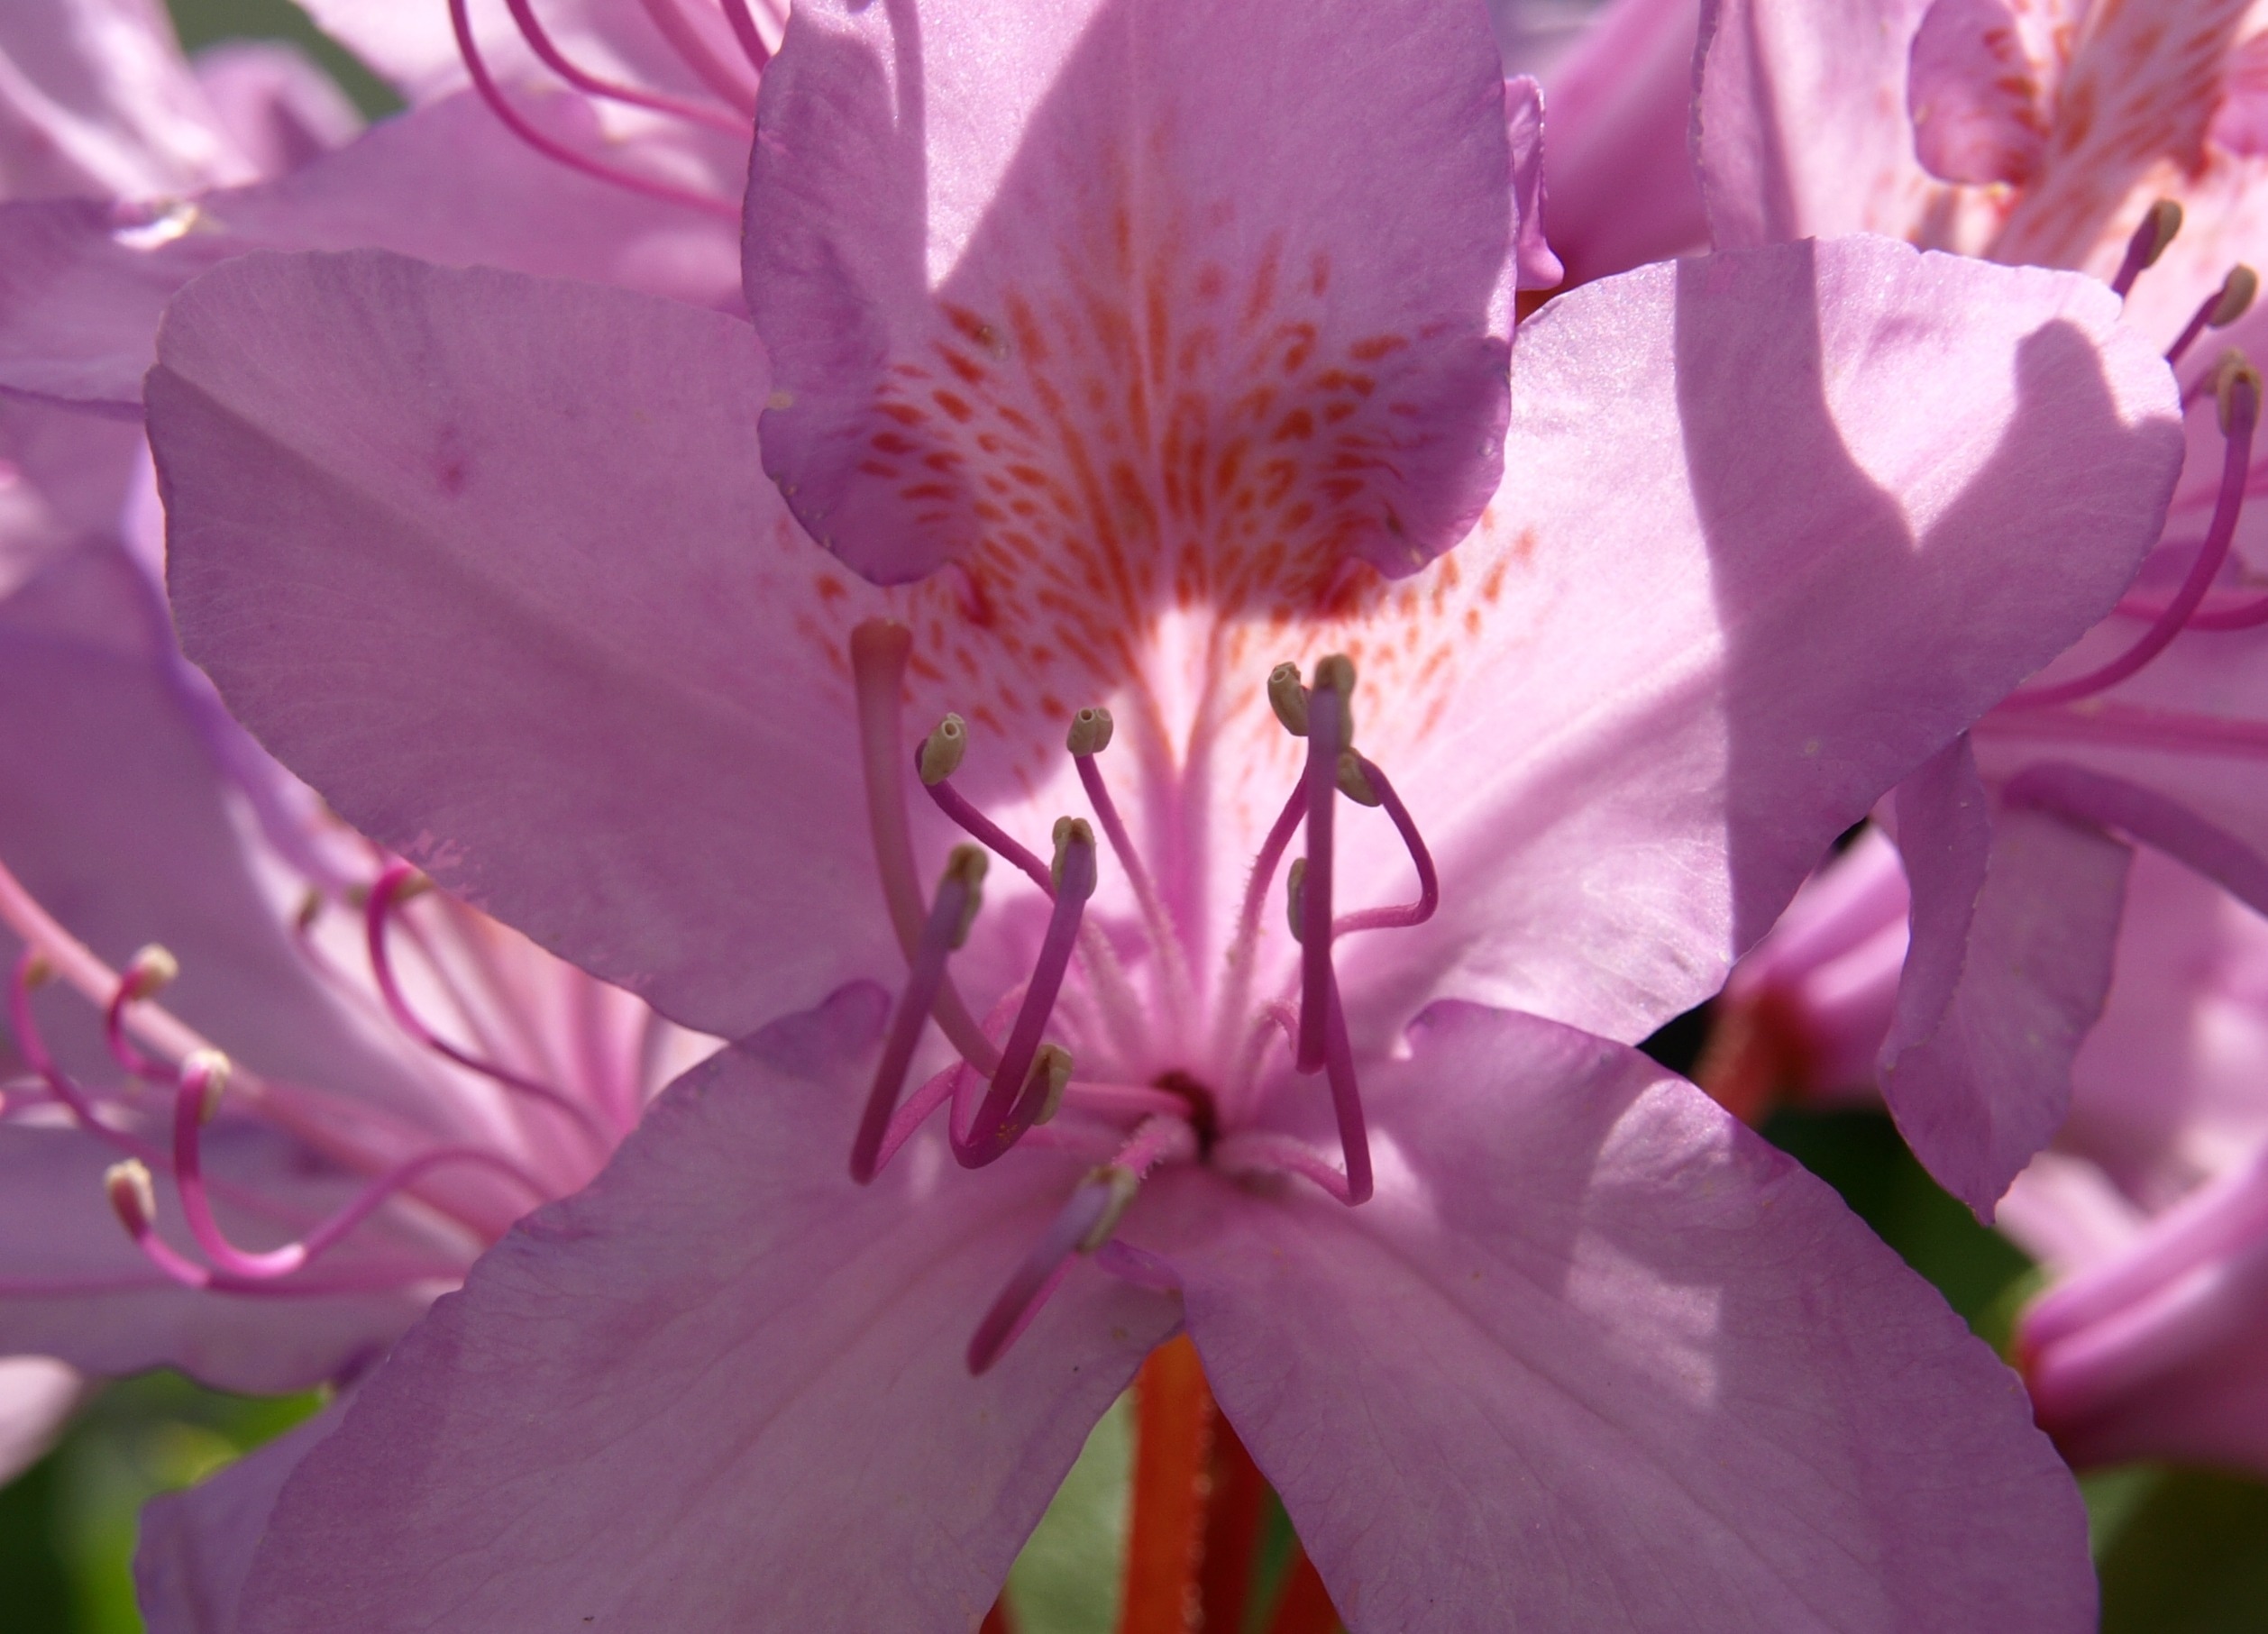 pink 5 petaled flower